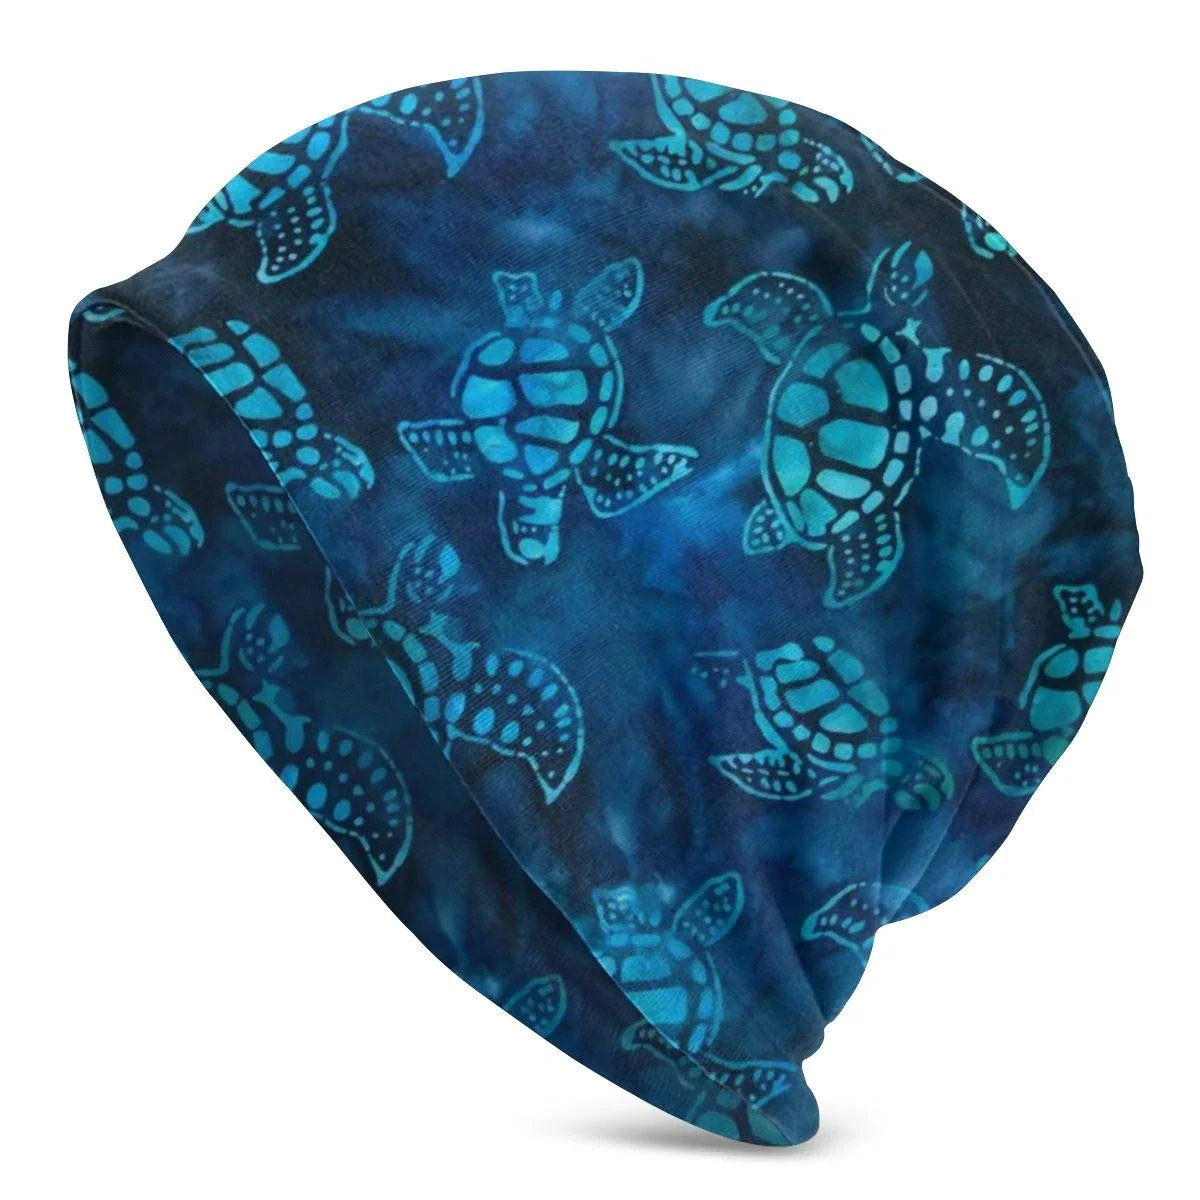 

Watercolor Blue Sea Turtle Slouchy For Men Women - Unisex Cuffed Plain Baggy Skull Cap Summer Winter Warm Beanie Knit Hat